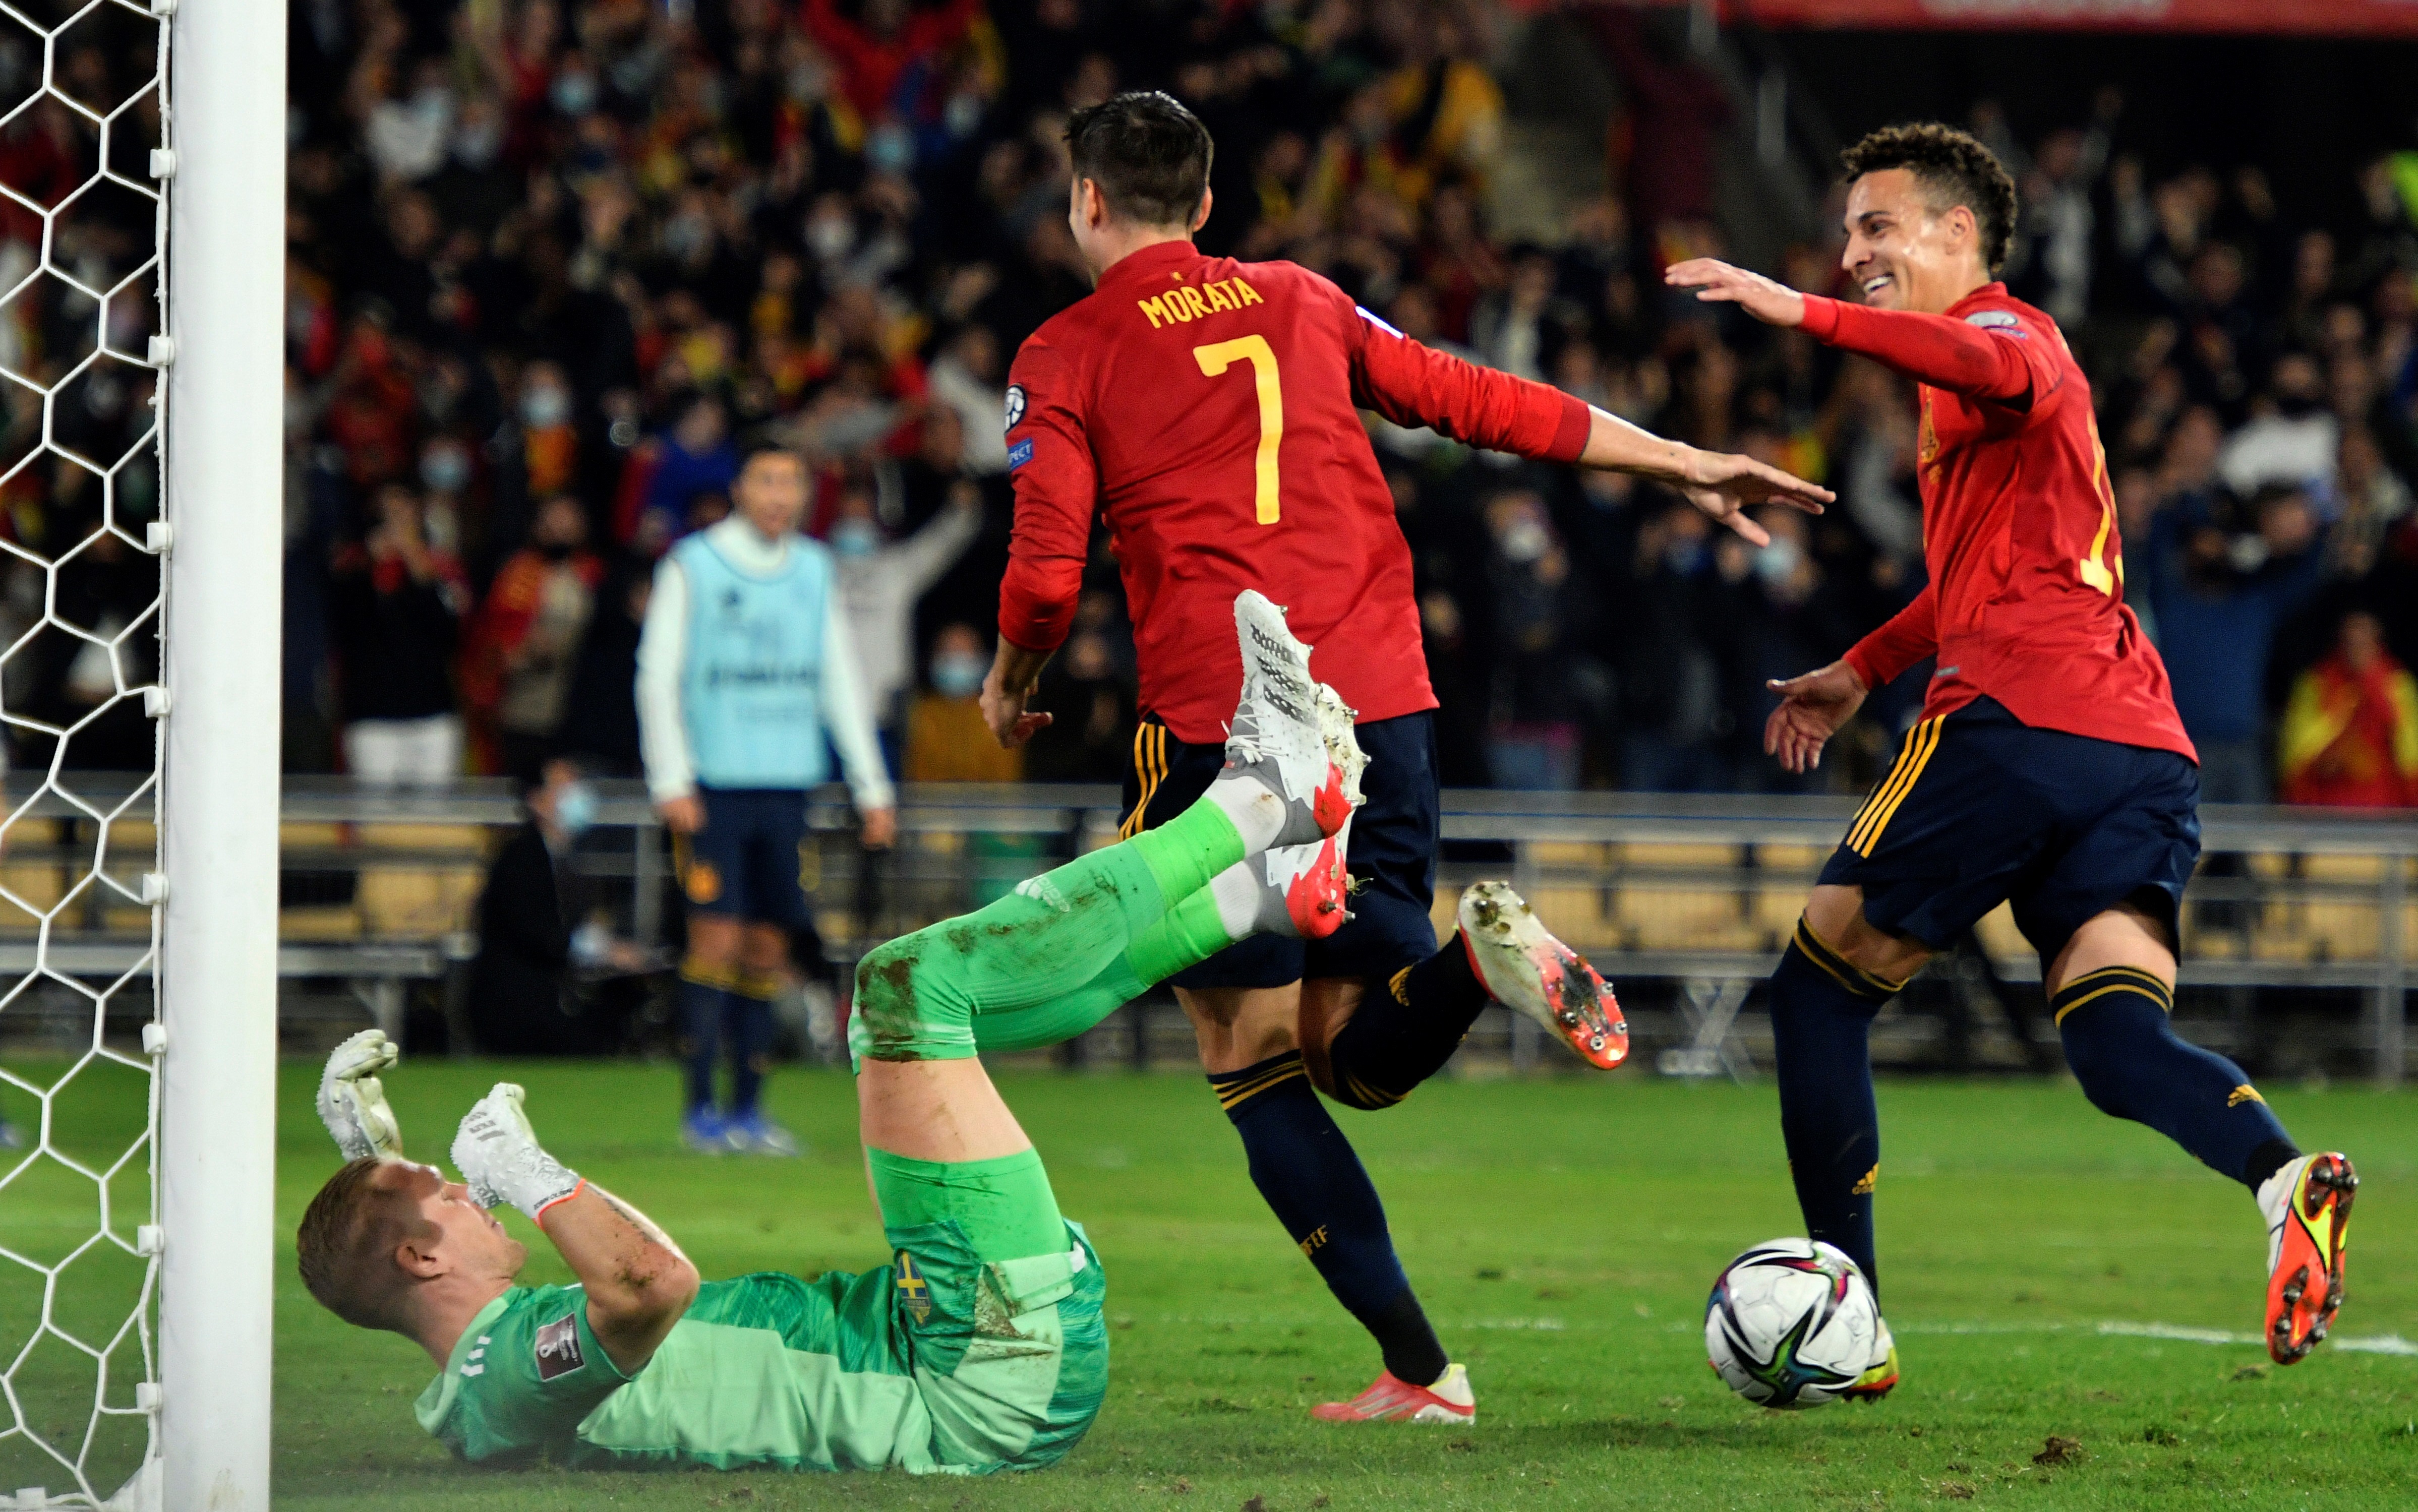 El delantero de la selección española de fútbol Álvaro Morata (c) celebra tras marcar ante Suecia, durante el partido de la fase de clasificación del Mundial de Qatar 2022 disputado en el estadio de La Cartuja, en Sevilla. EFE/Raúl Caro
